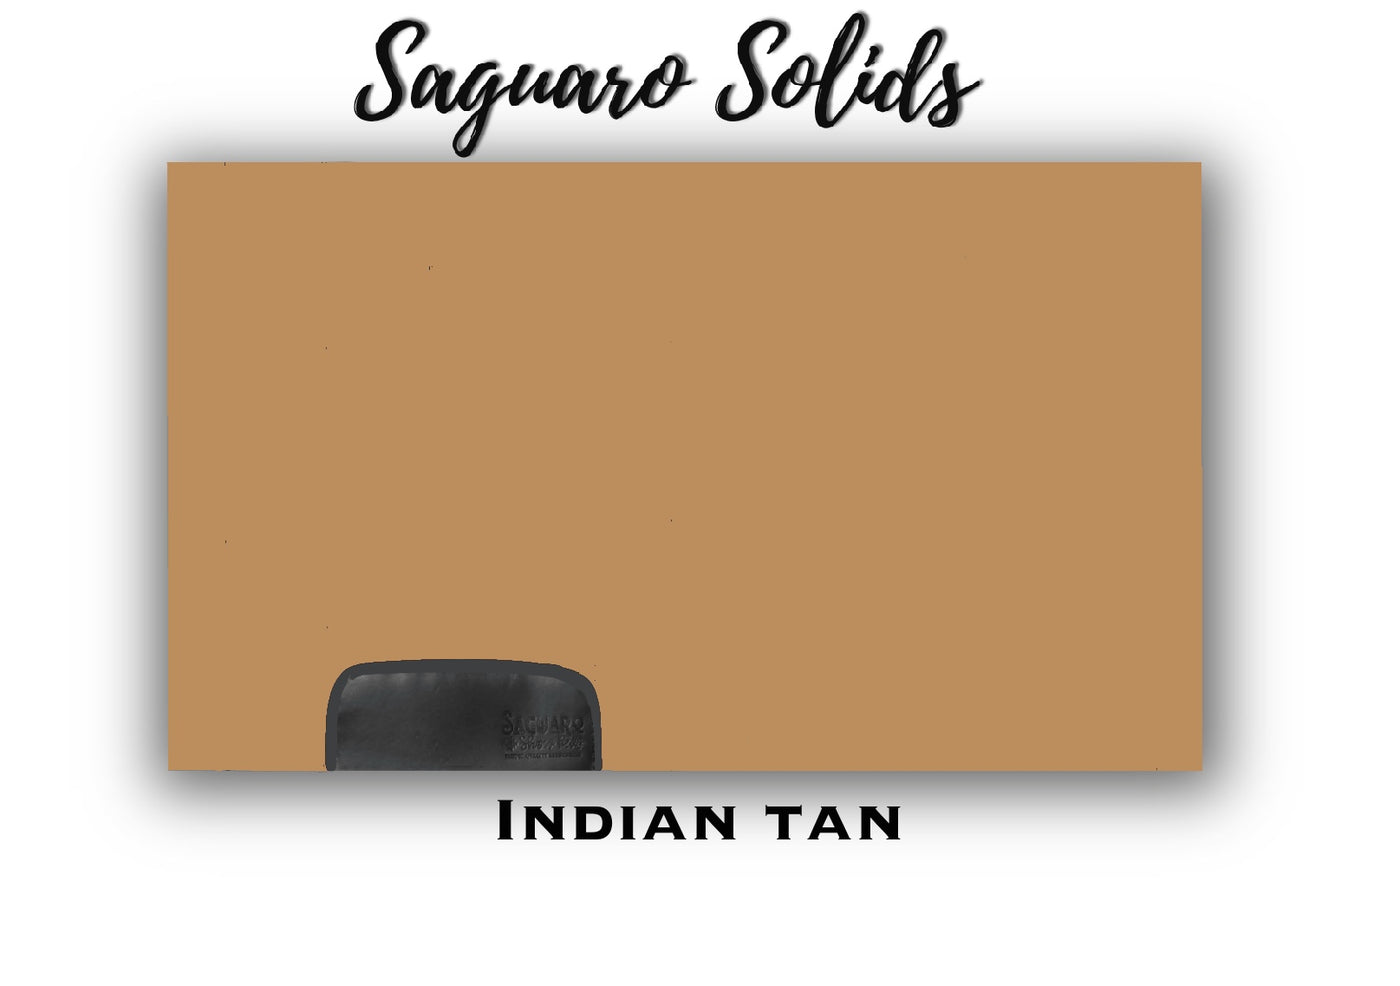 Saguaro Solid "Indian Tan" Show Pad (SEMI-CUSTOM)